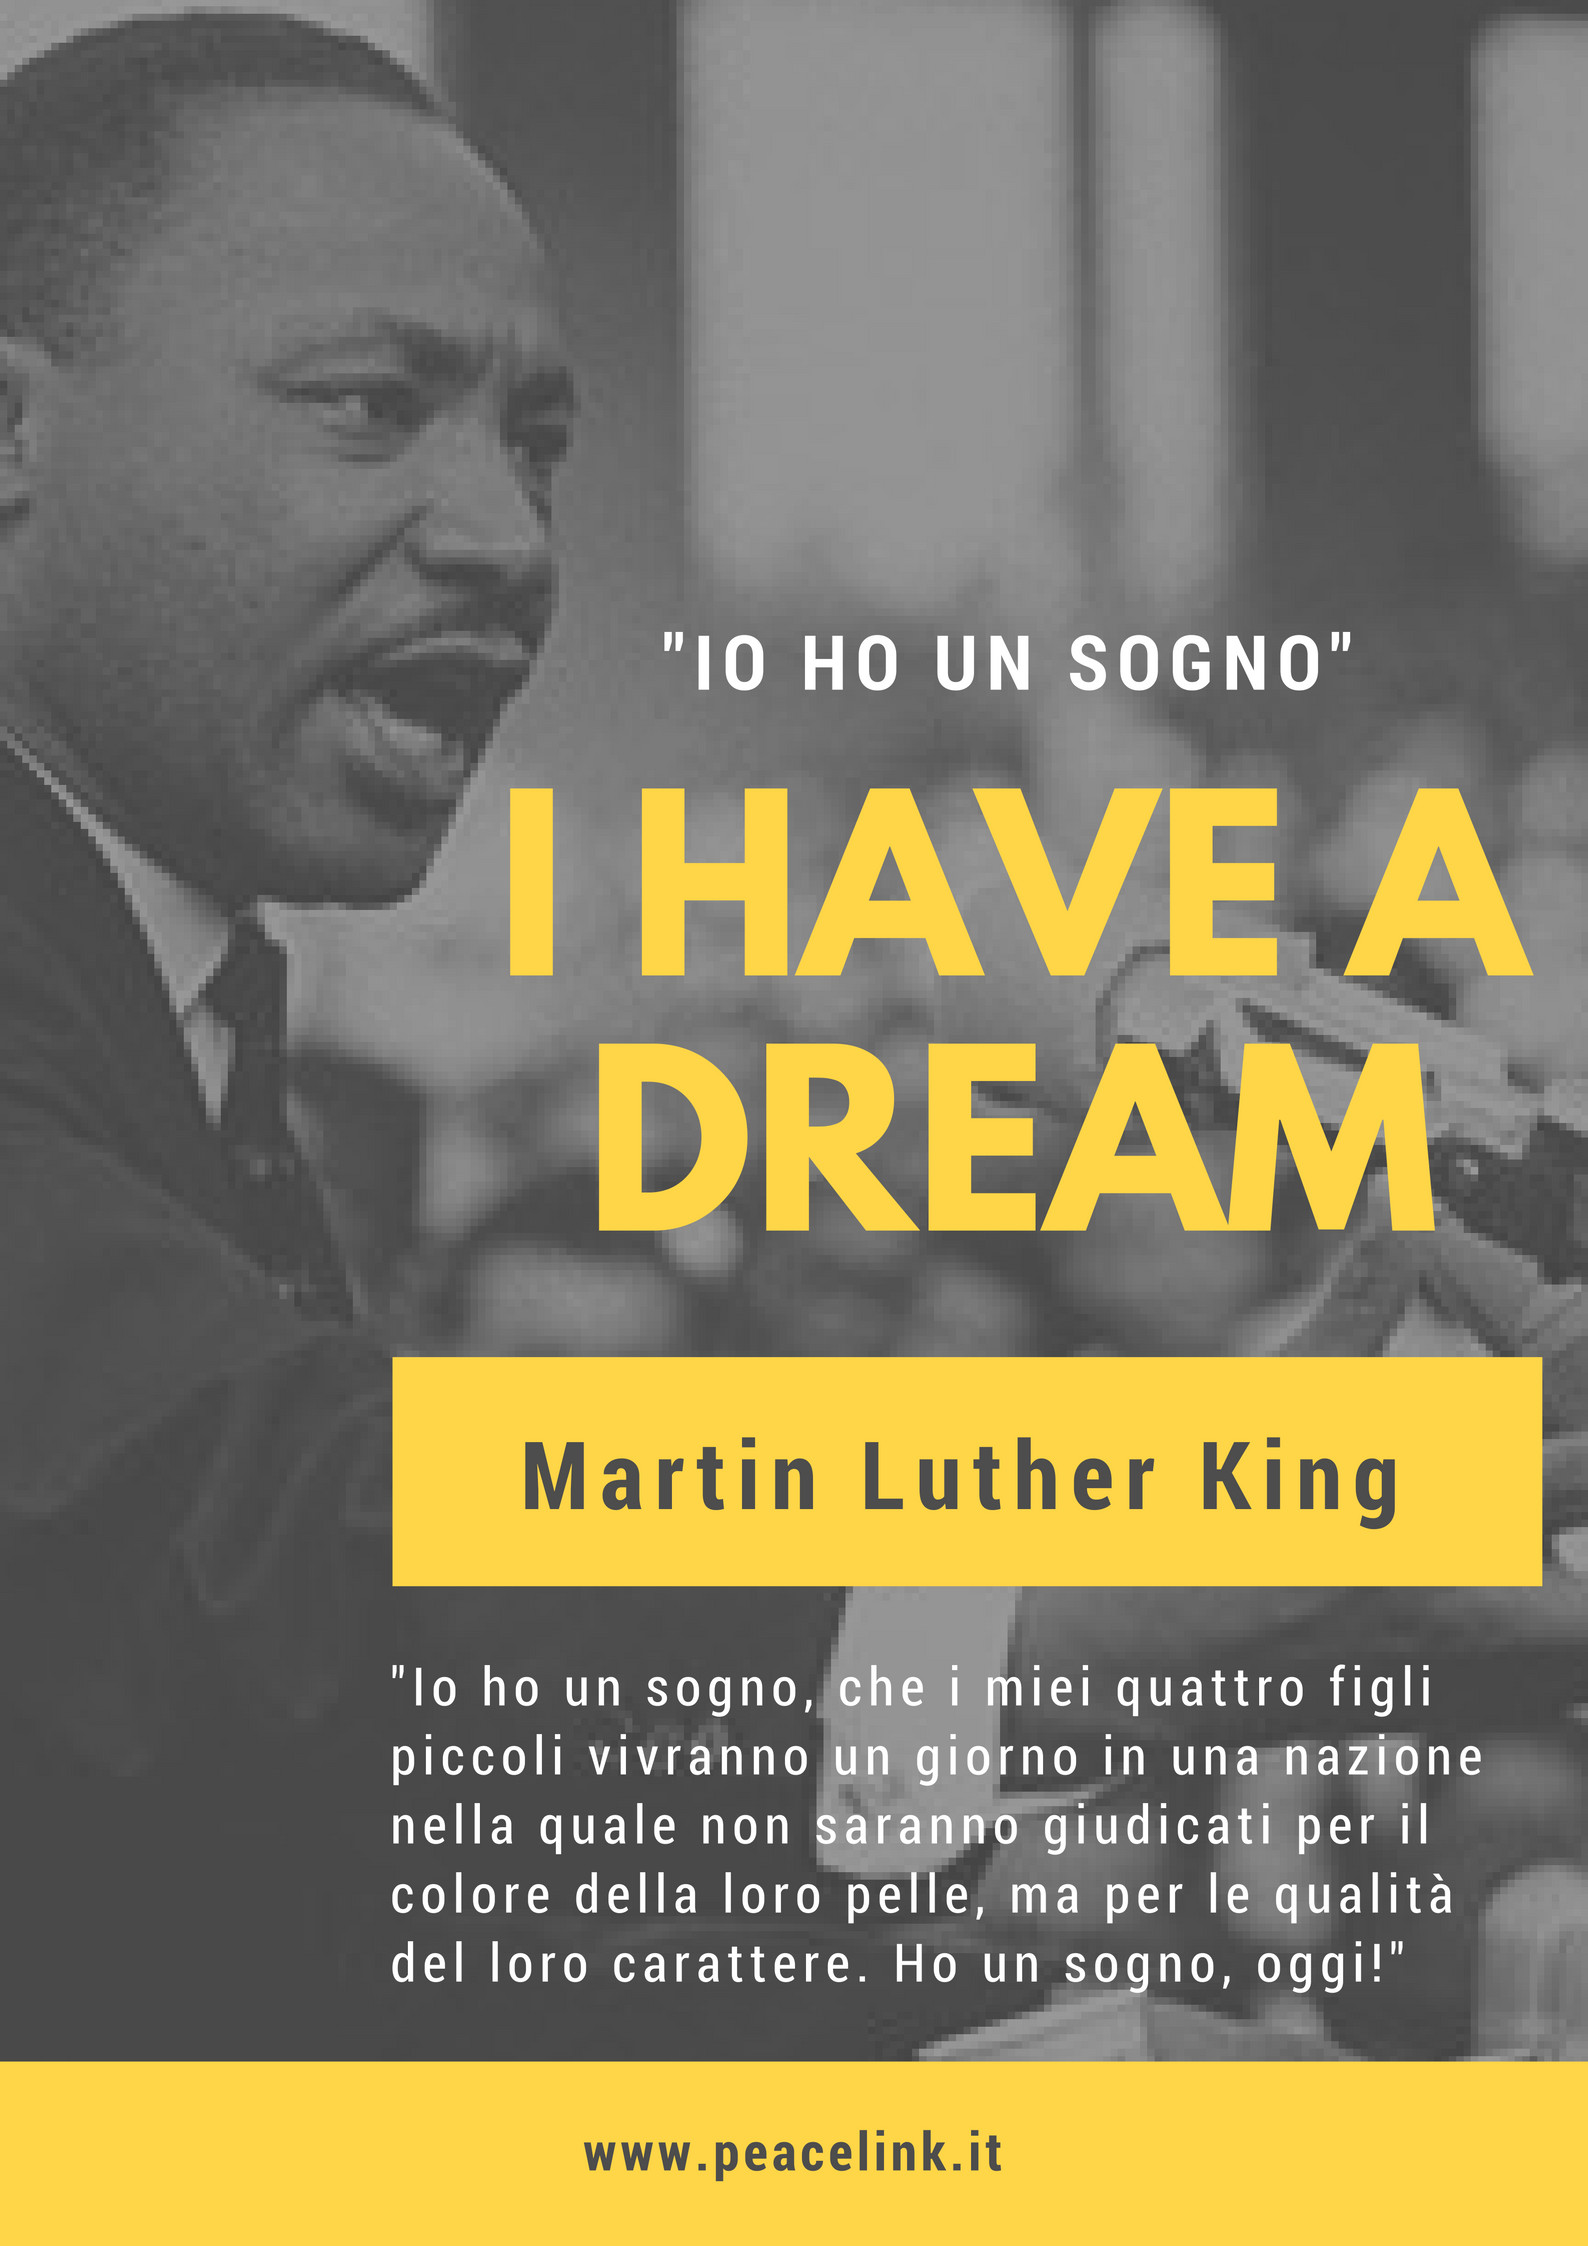 55 anni fa l’omicidio di Martin Luther King